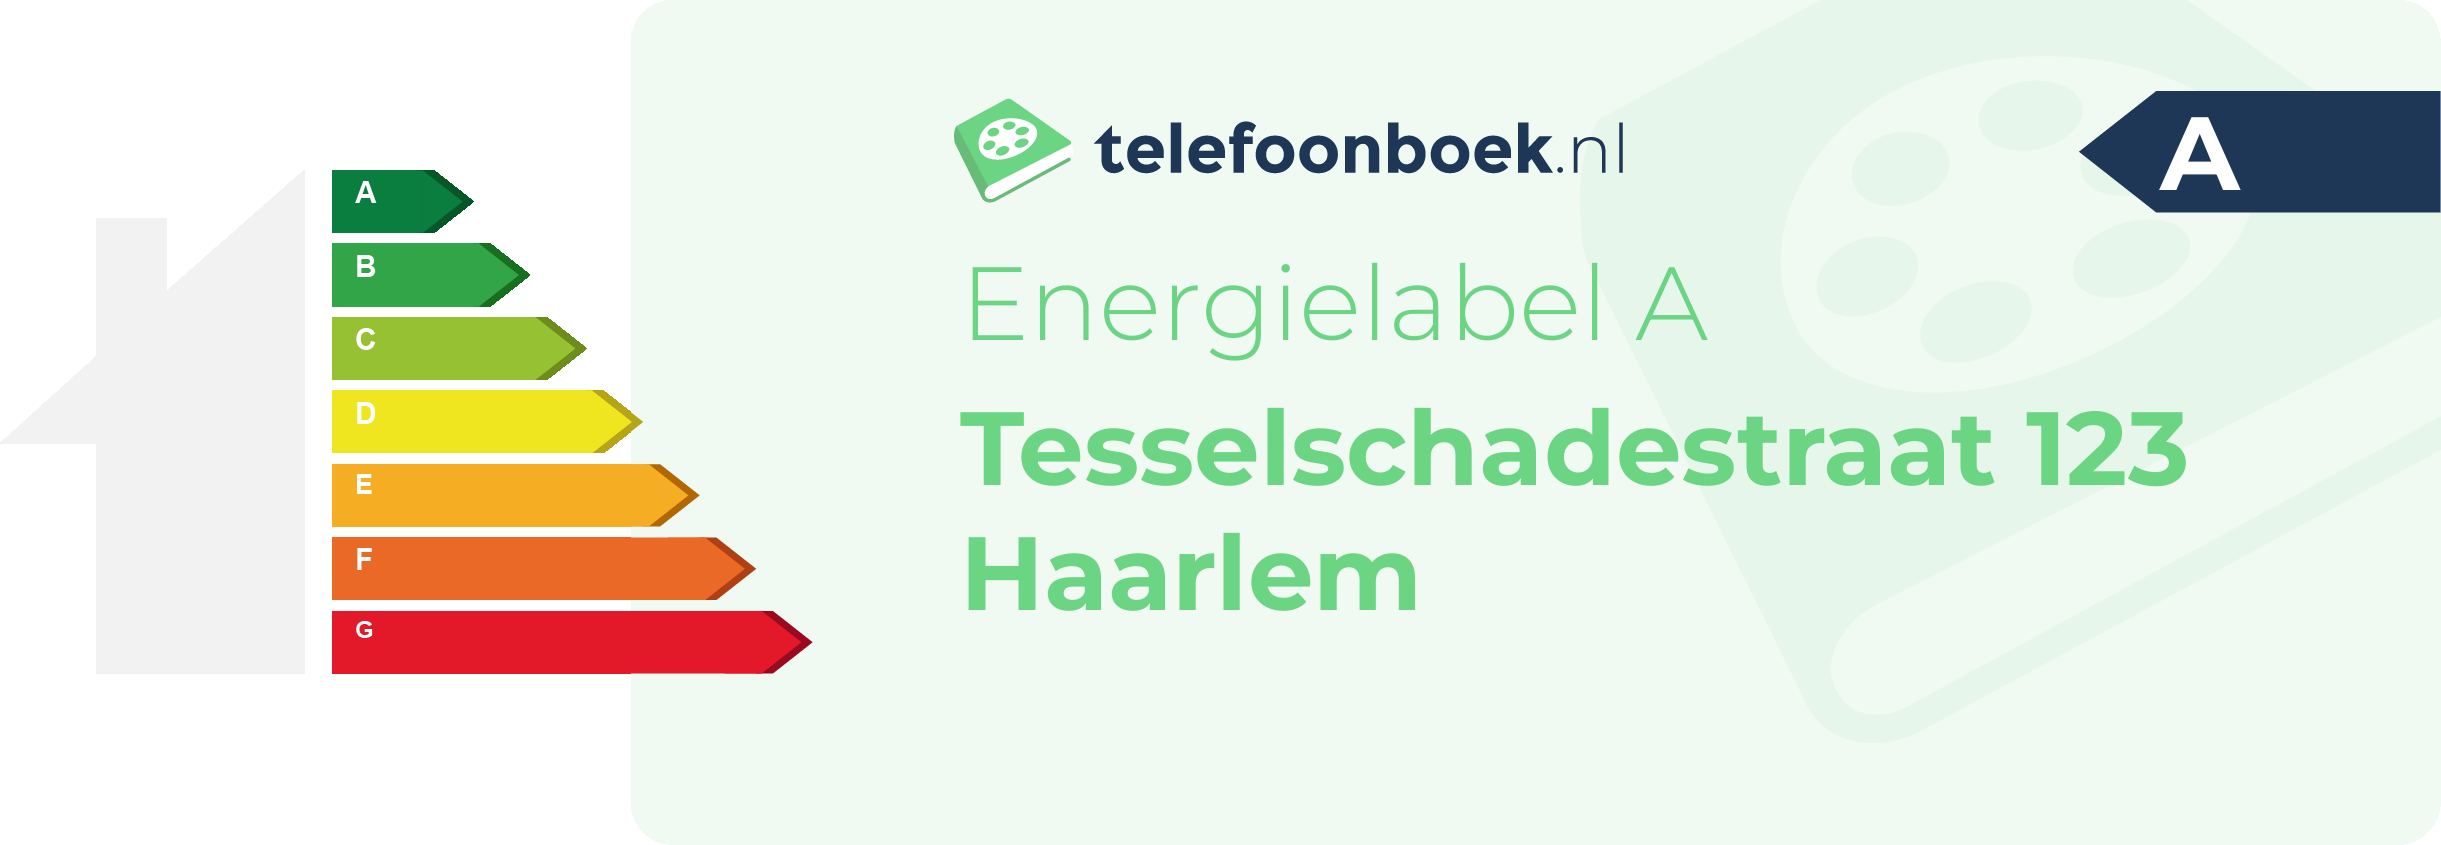 Energielabel Tesselschadestraat 123 Haarlem